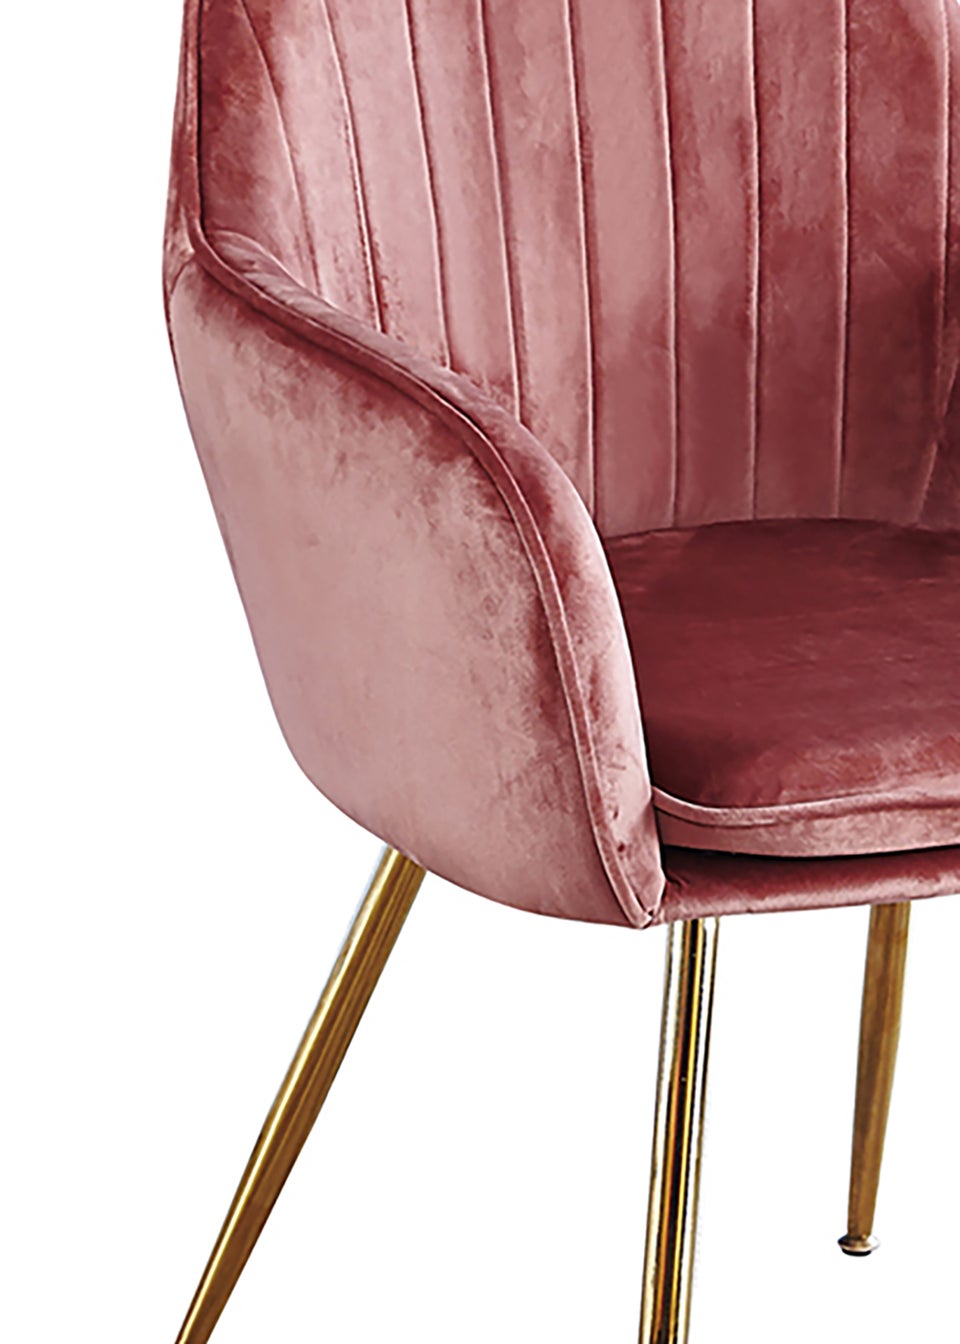 LPD Furniture Set of 2  Lara Dining Chairs Pink